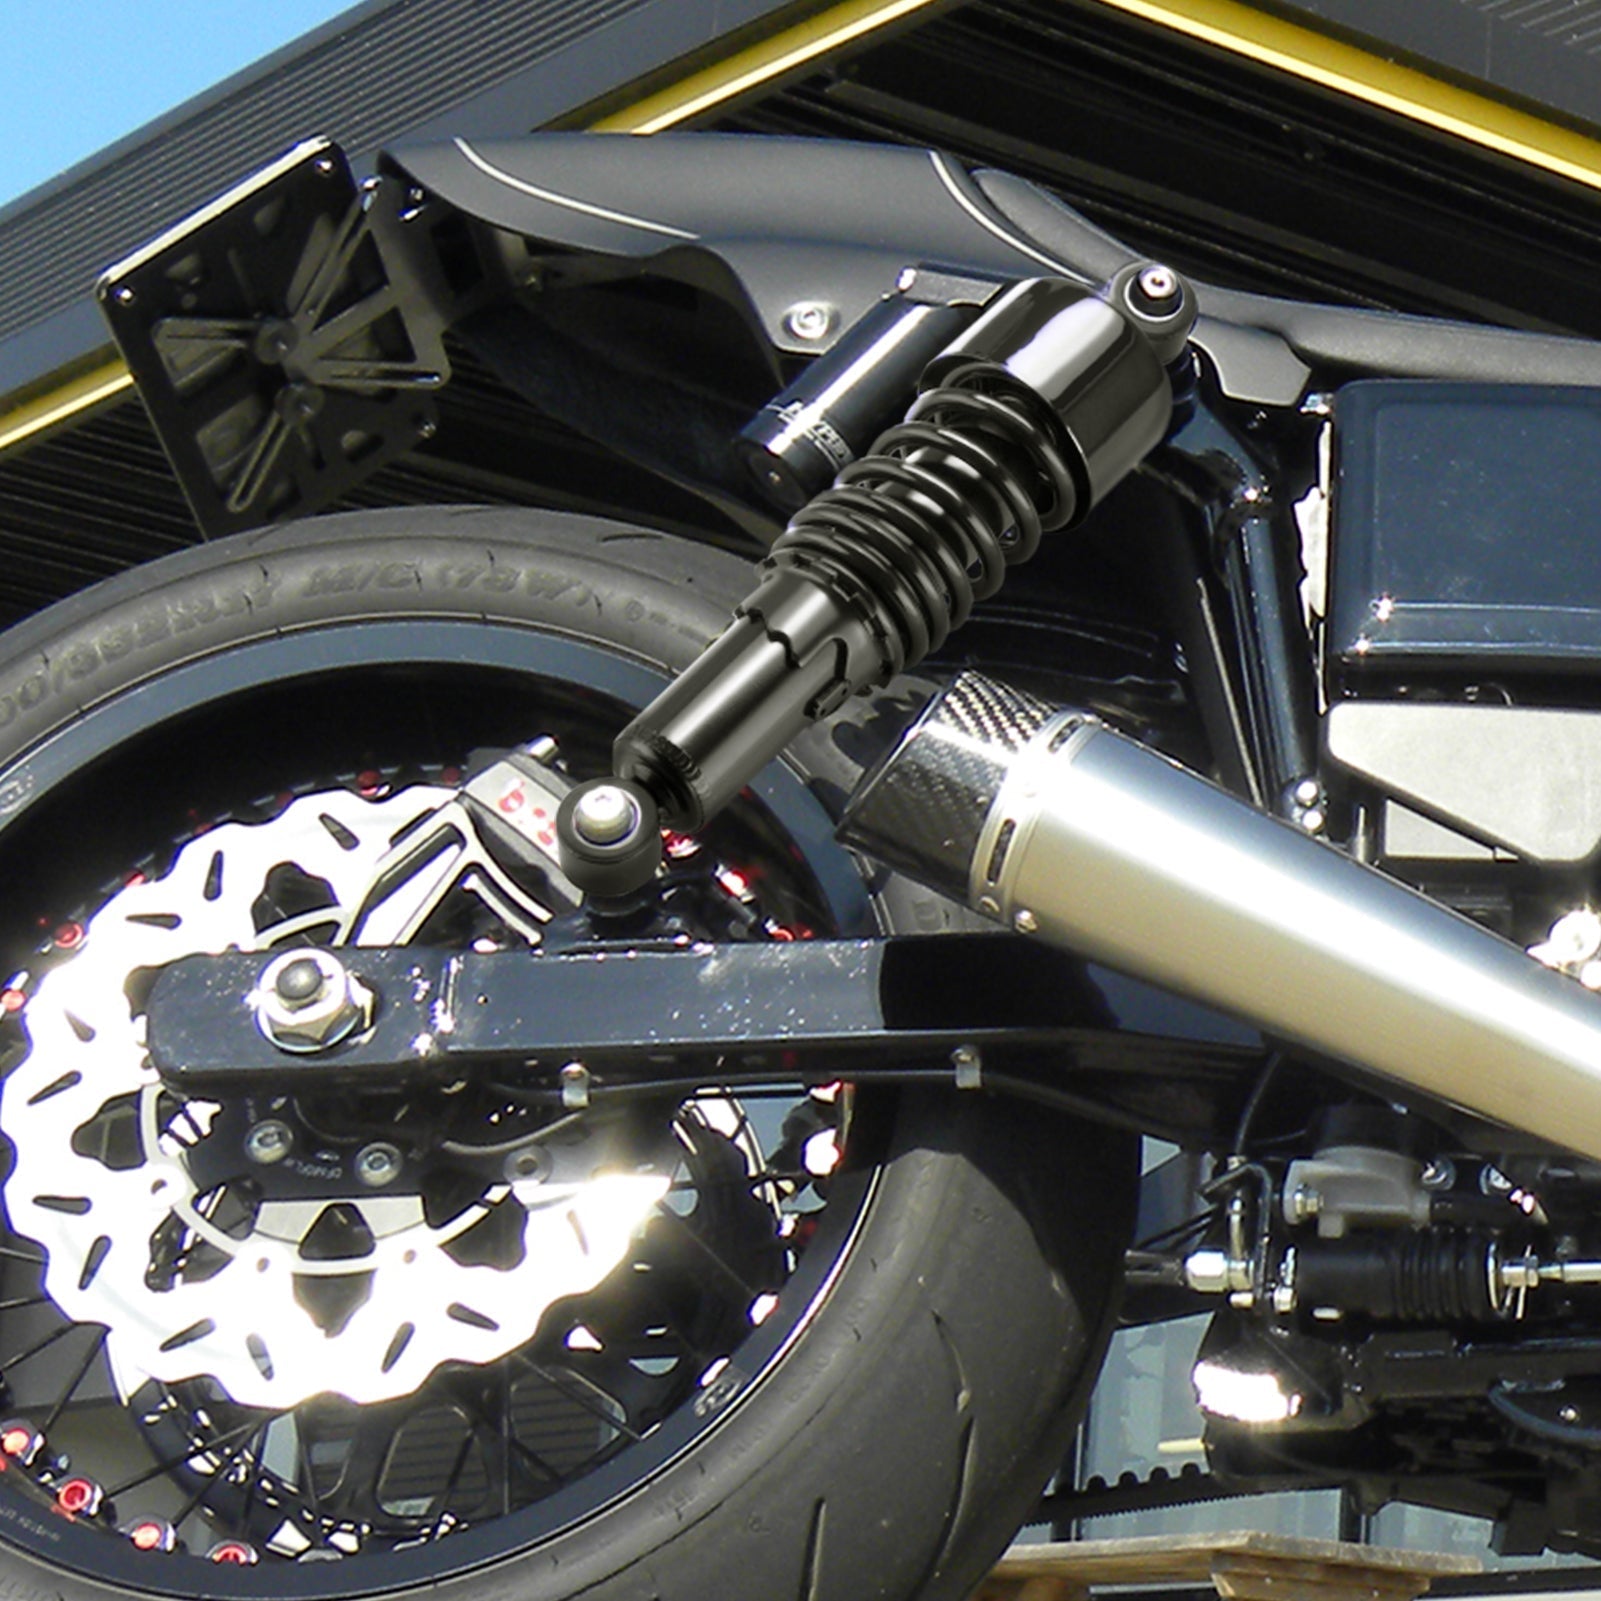 Harley Dyna Street bob Wide Gide 10.5"/267mm Preload Adjustable Motorcycle Rear Absorber Shocks